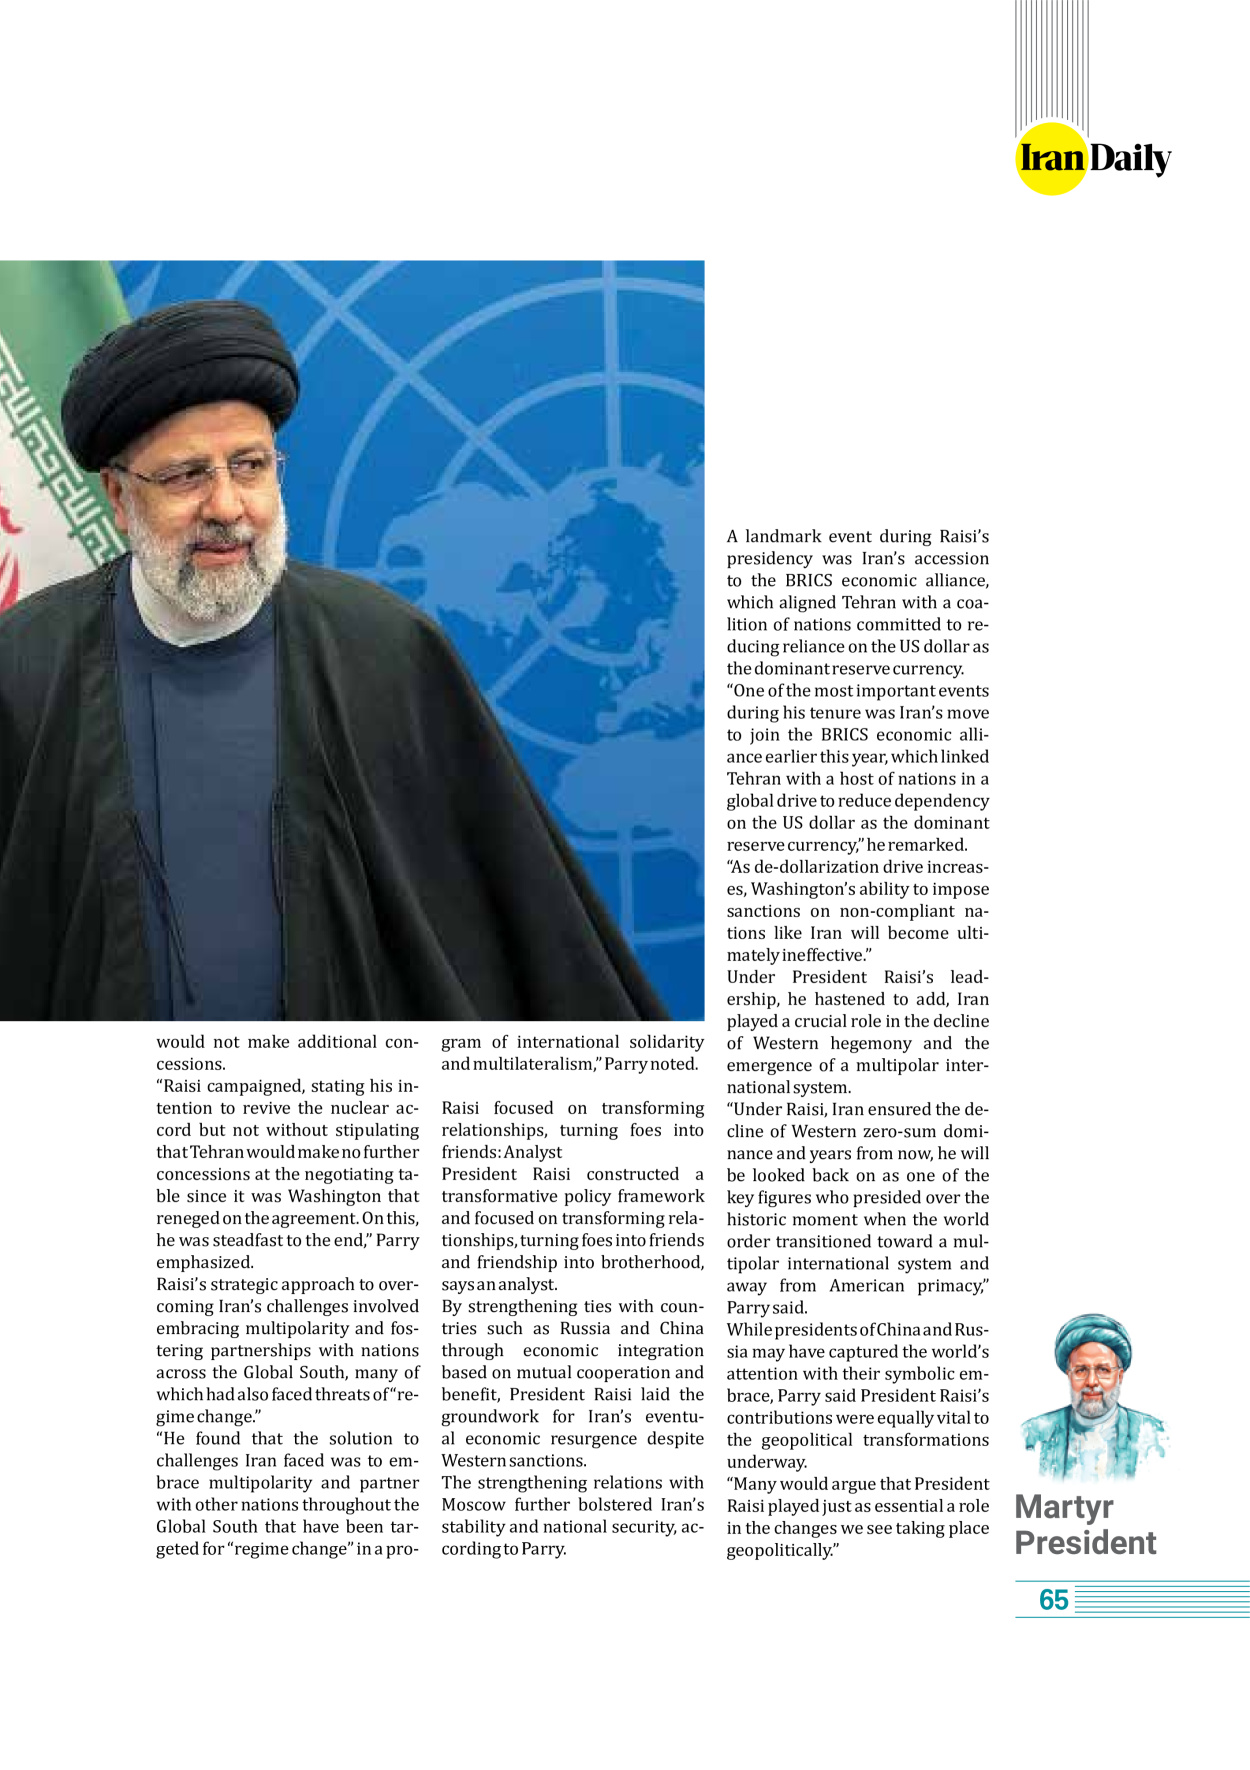 روزنامه ایران - ویژه نامه وِزه نامه چهلم شهید رییسی( انگلیسی) - ۱۷ تیر ۱۴۰۳ - صفحه ۶۵